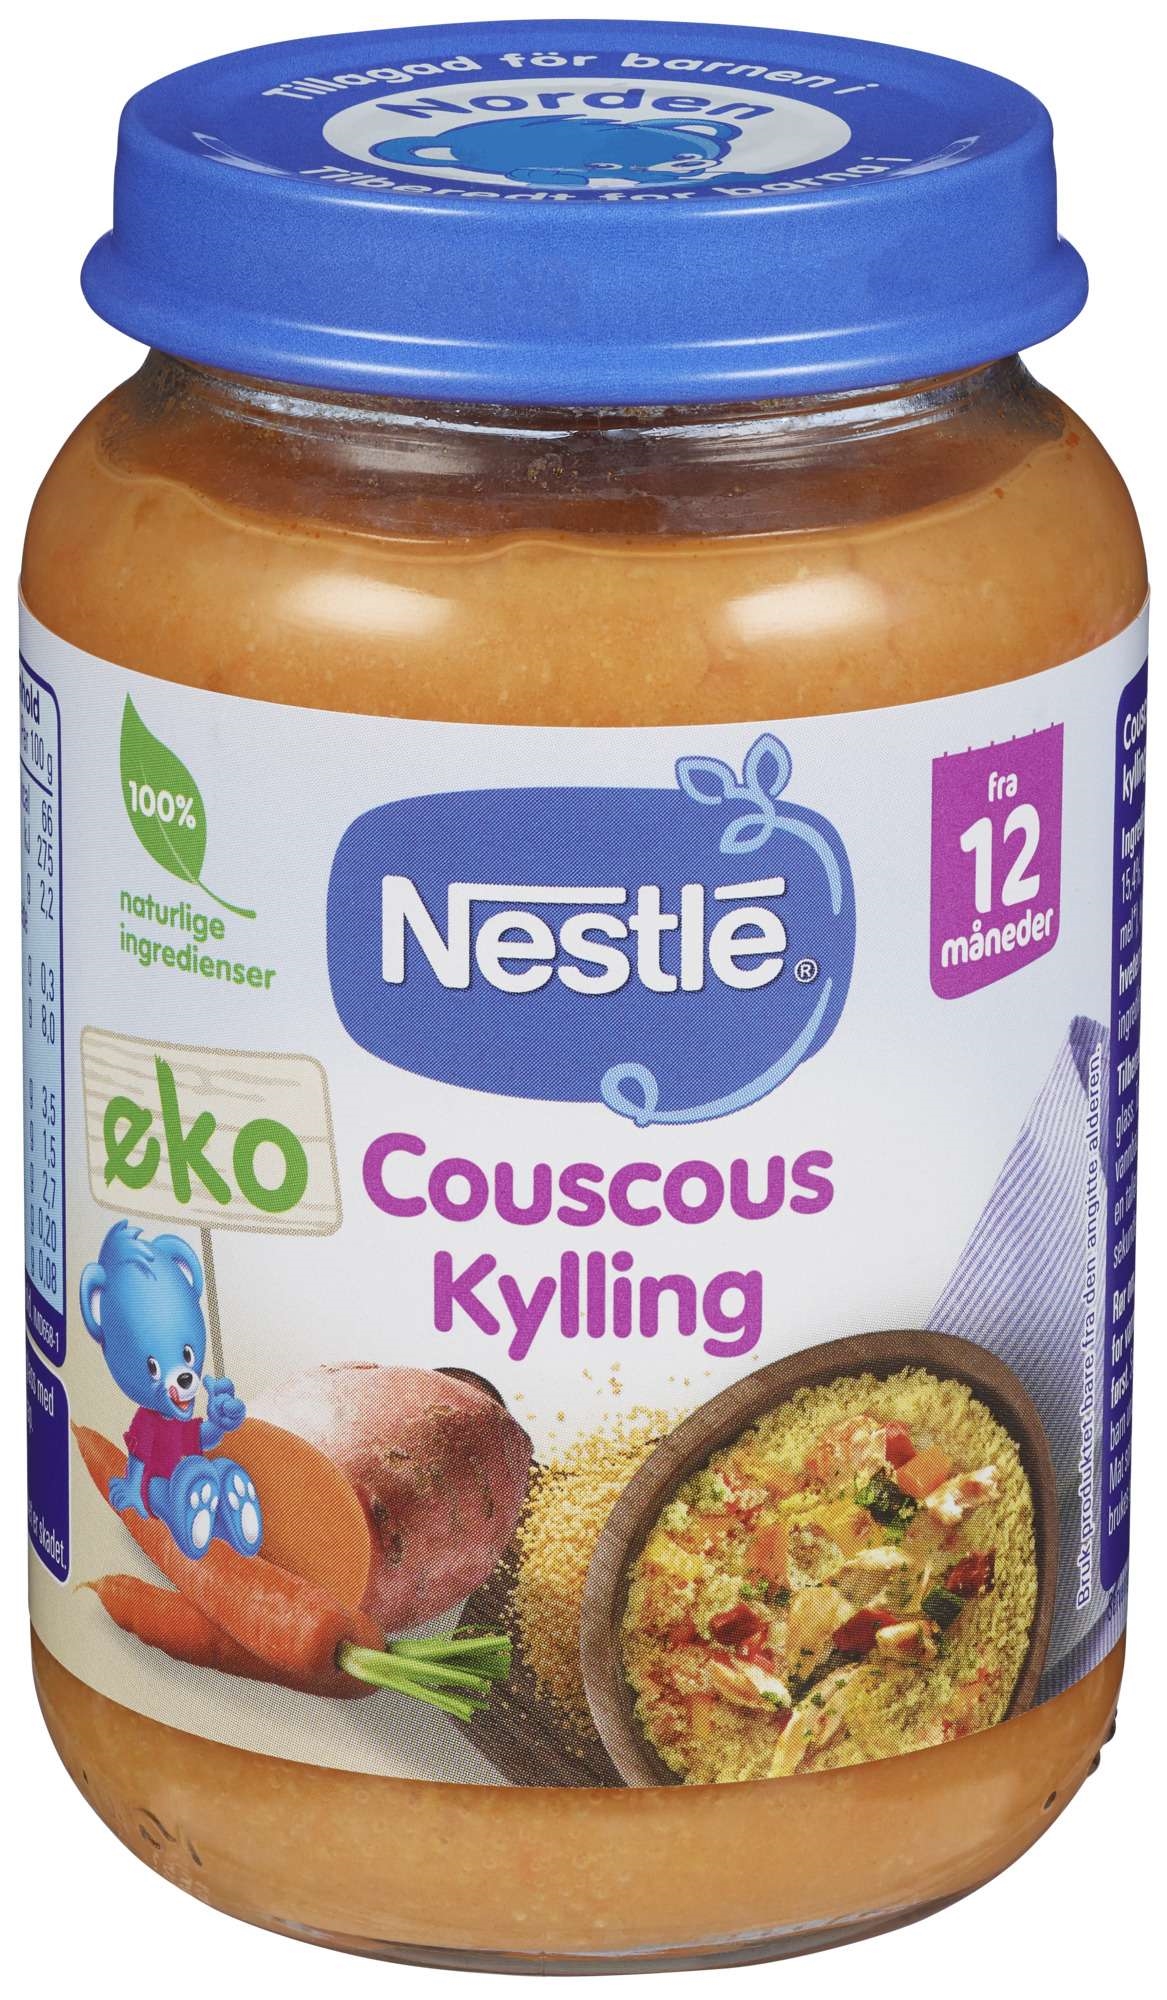 Naturnes couscous kylling 12m 190g